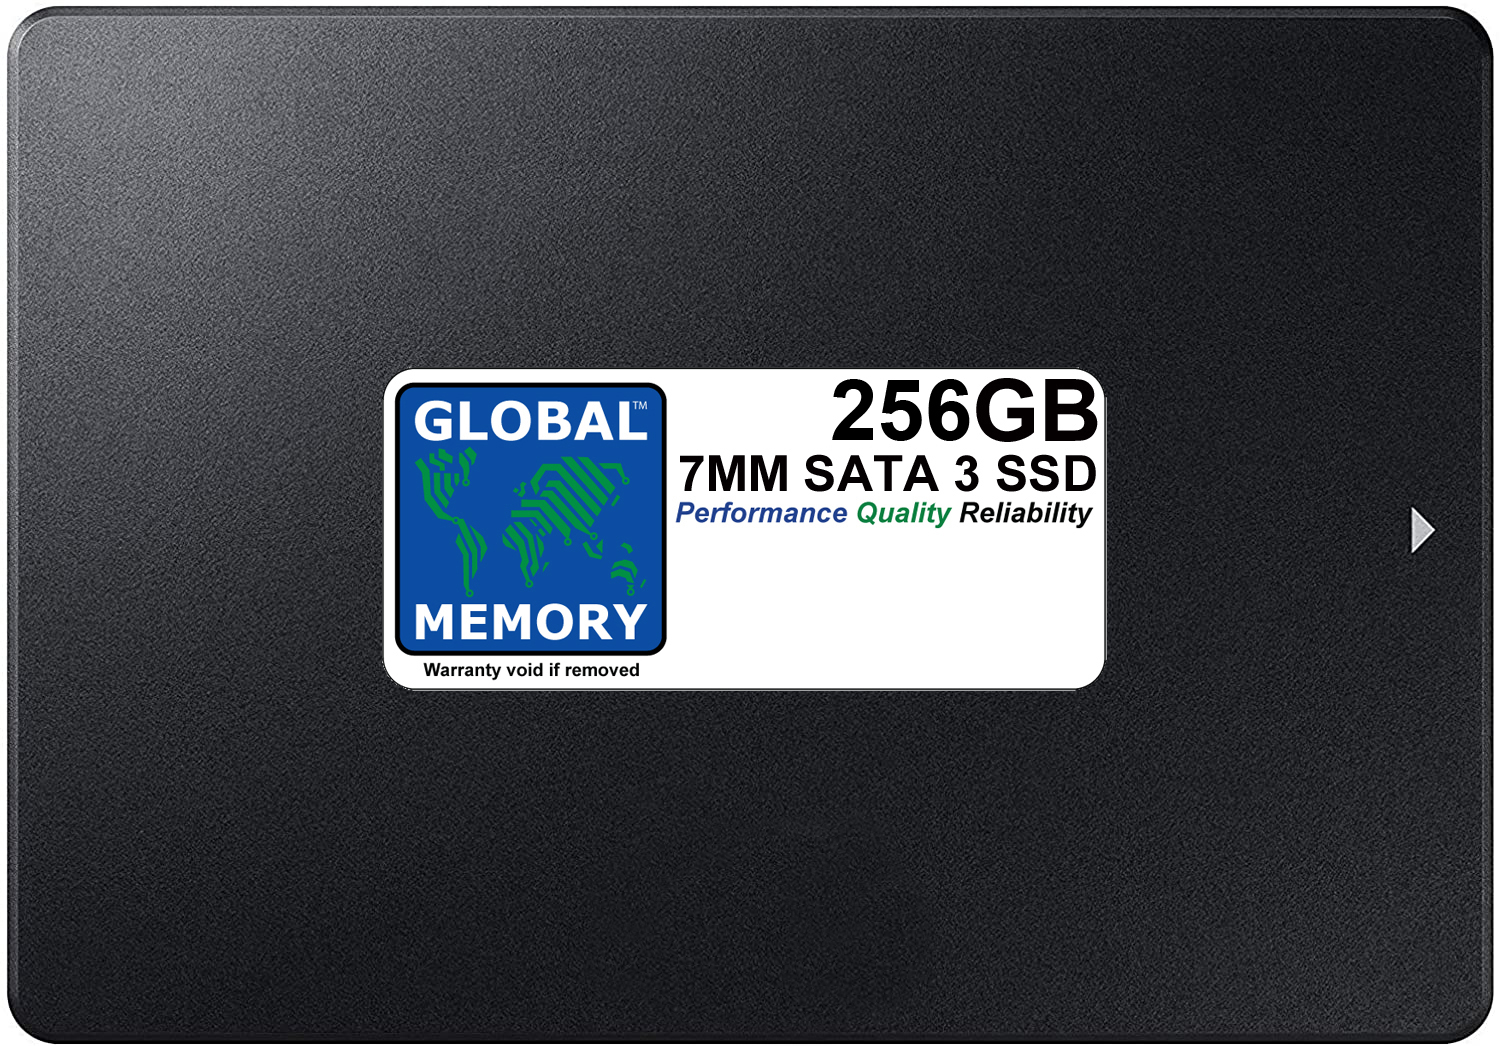 256GB 7mm 2.5" SATA 3 SSD FOR MAC MINI (2011 - 2012 - 2014) - Click Image to Close